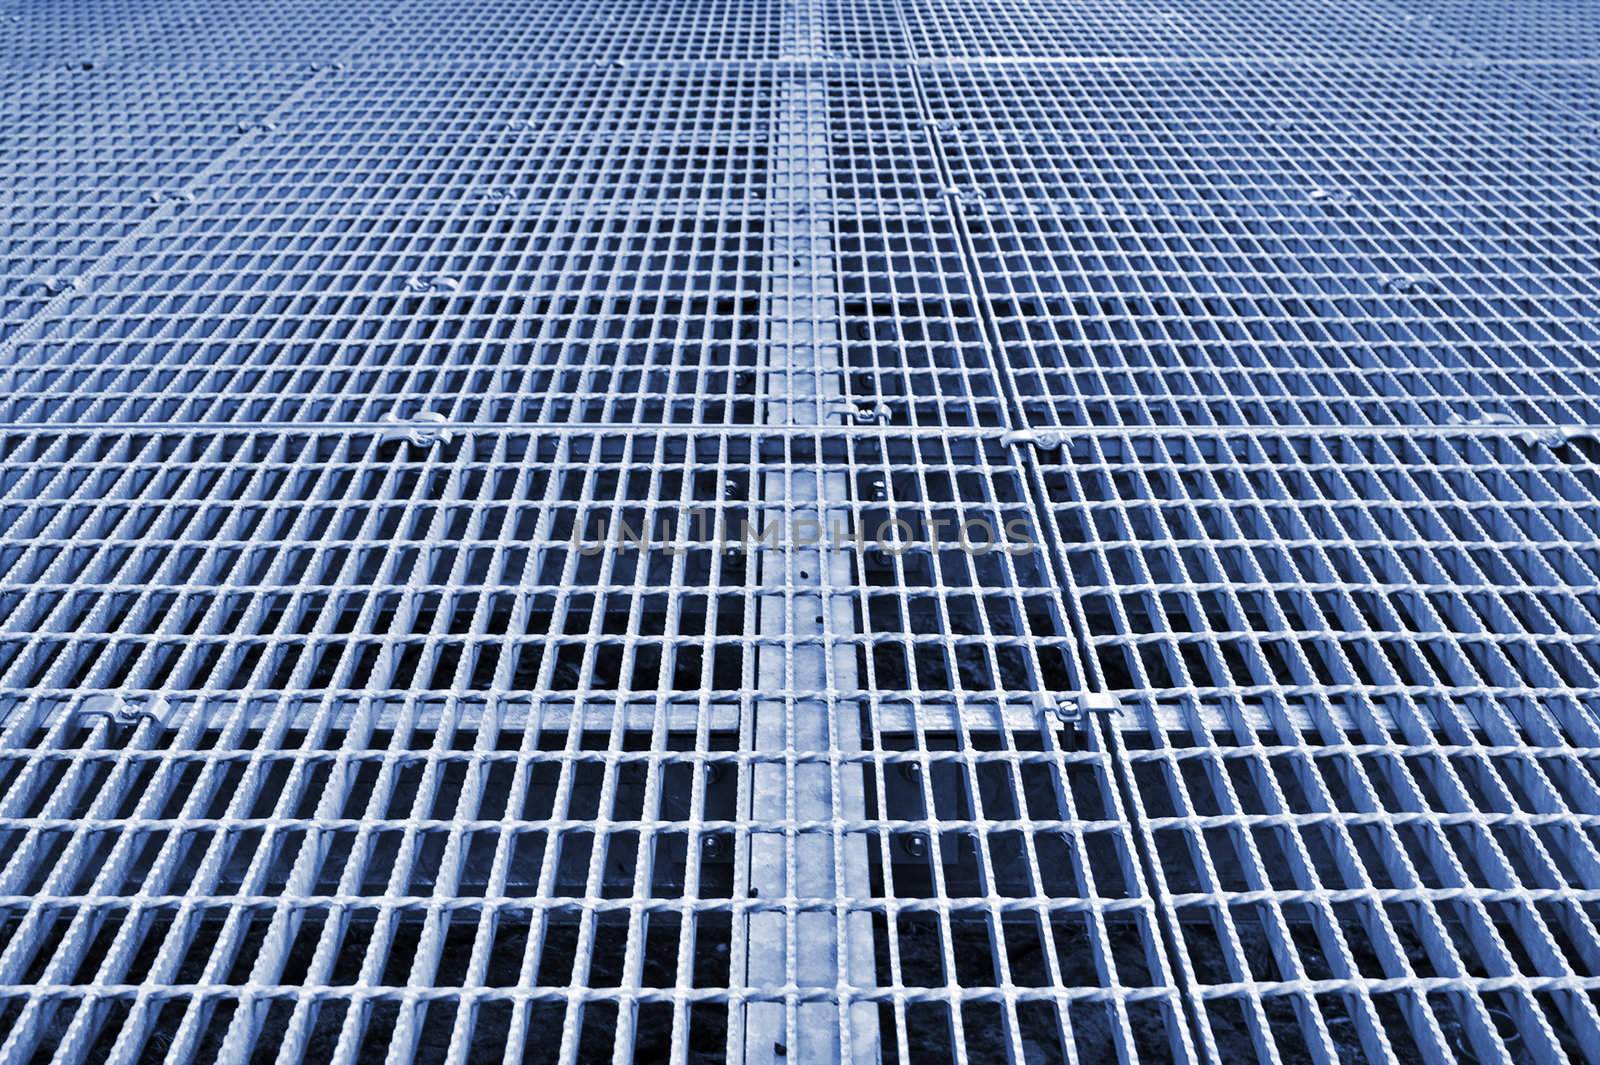 metal grid walkway by clearviewstock